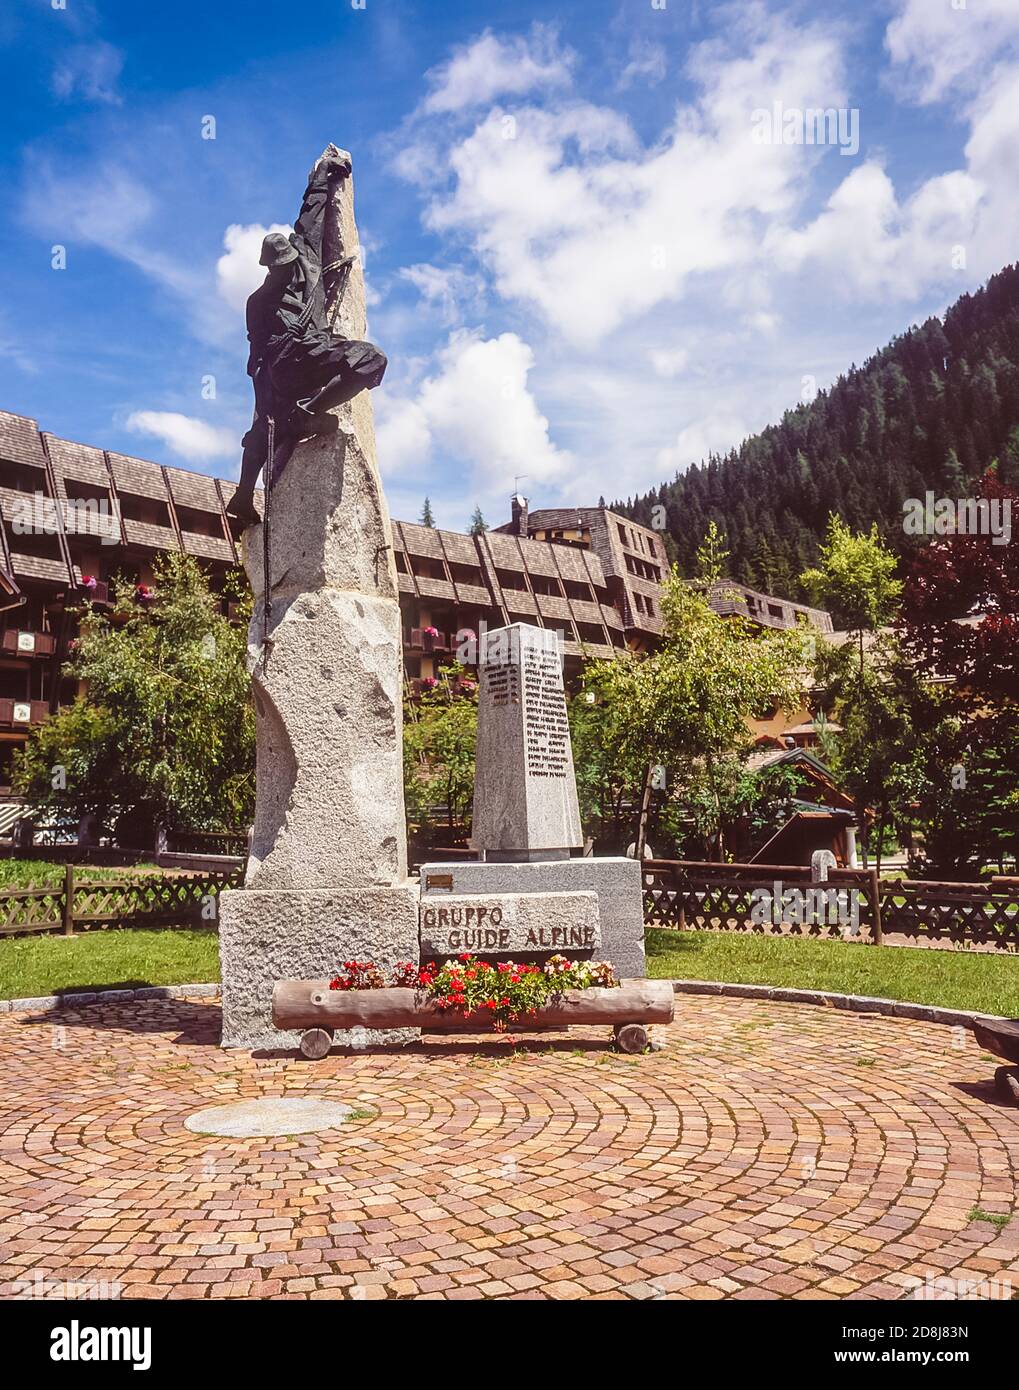 Scena generale al memoriale delle guide alpine località turistica di Madonna di Campiglio nel Dolomiti di Brenta Regione dell'Italia settentrionale nella provincia di Trento Foto Stock